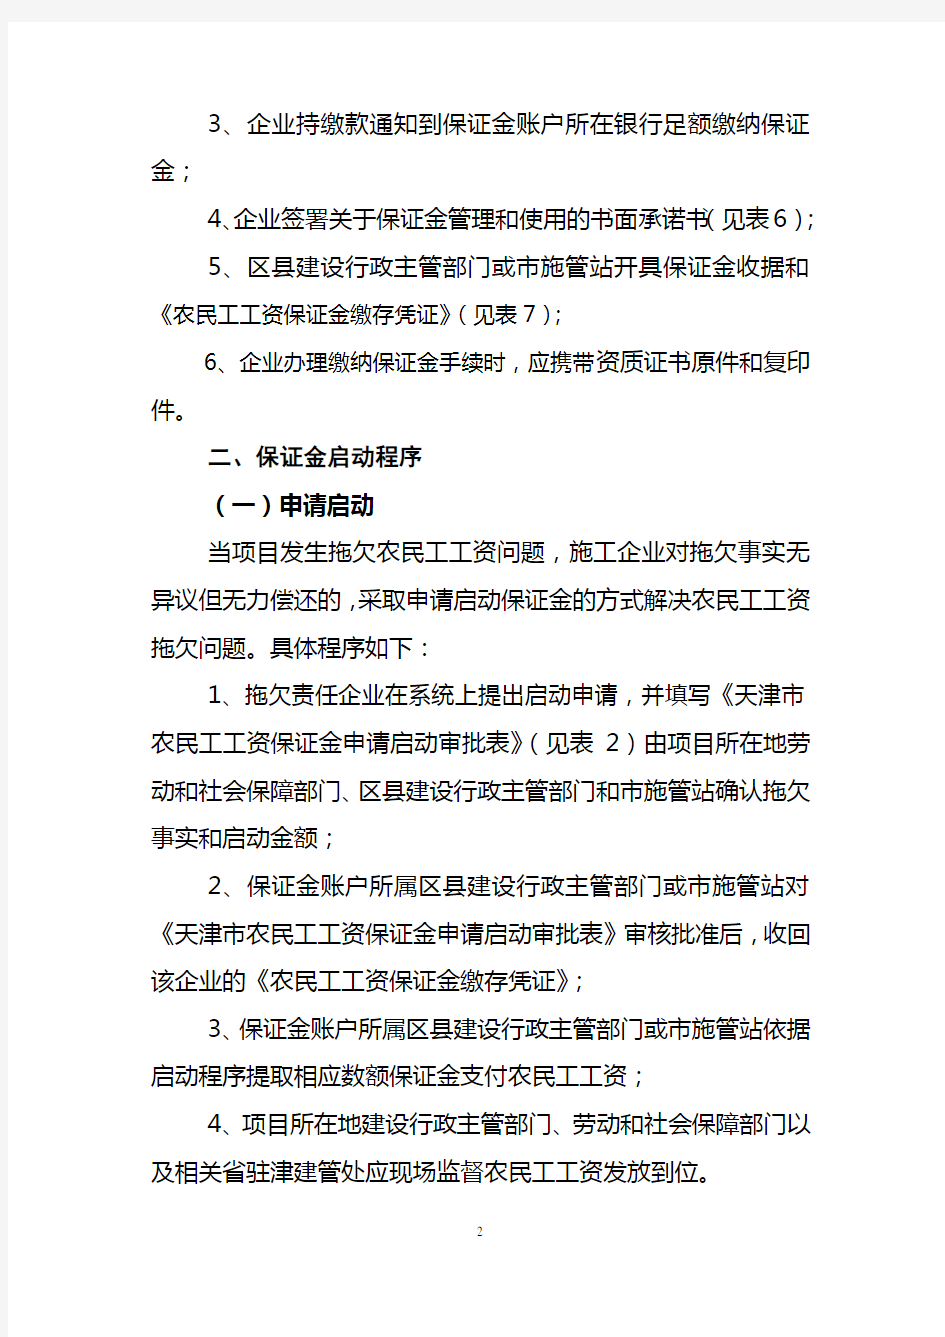 天津市建筑业农民工工资保证金制度实施细则